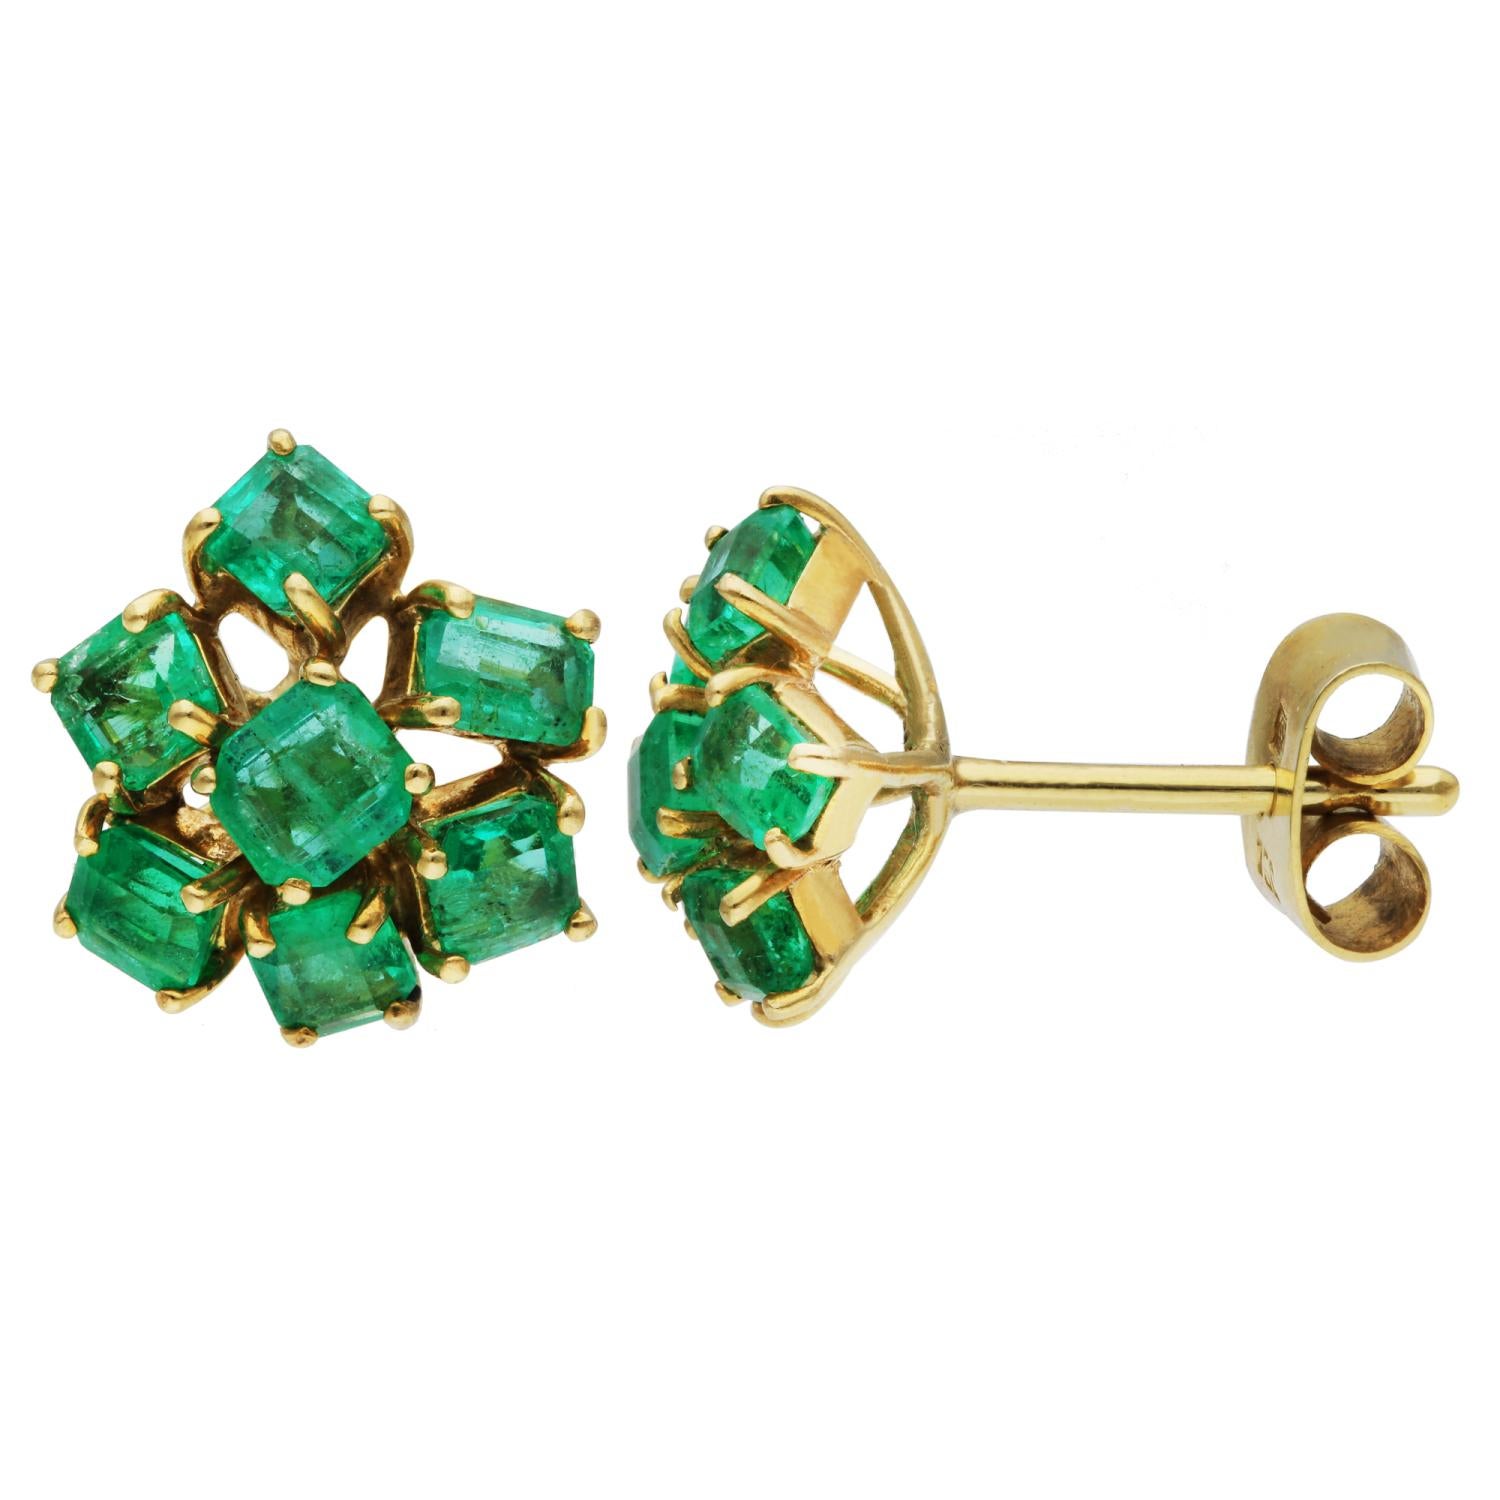 18ct Gelbgold 1.00ct Smaragd Cluster Ohrstecker 

Wir stellen Ihnen unsere exquisiten Pre-Owned Emerald Cluster Earrings vor, ein Meisterwerk von luxuriösem Design und anspruchsvoller Handwerkskunst. Jeder Ohrring dieses atemberaubenden Paars ist